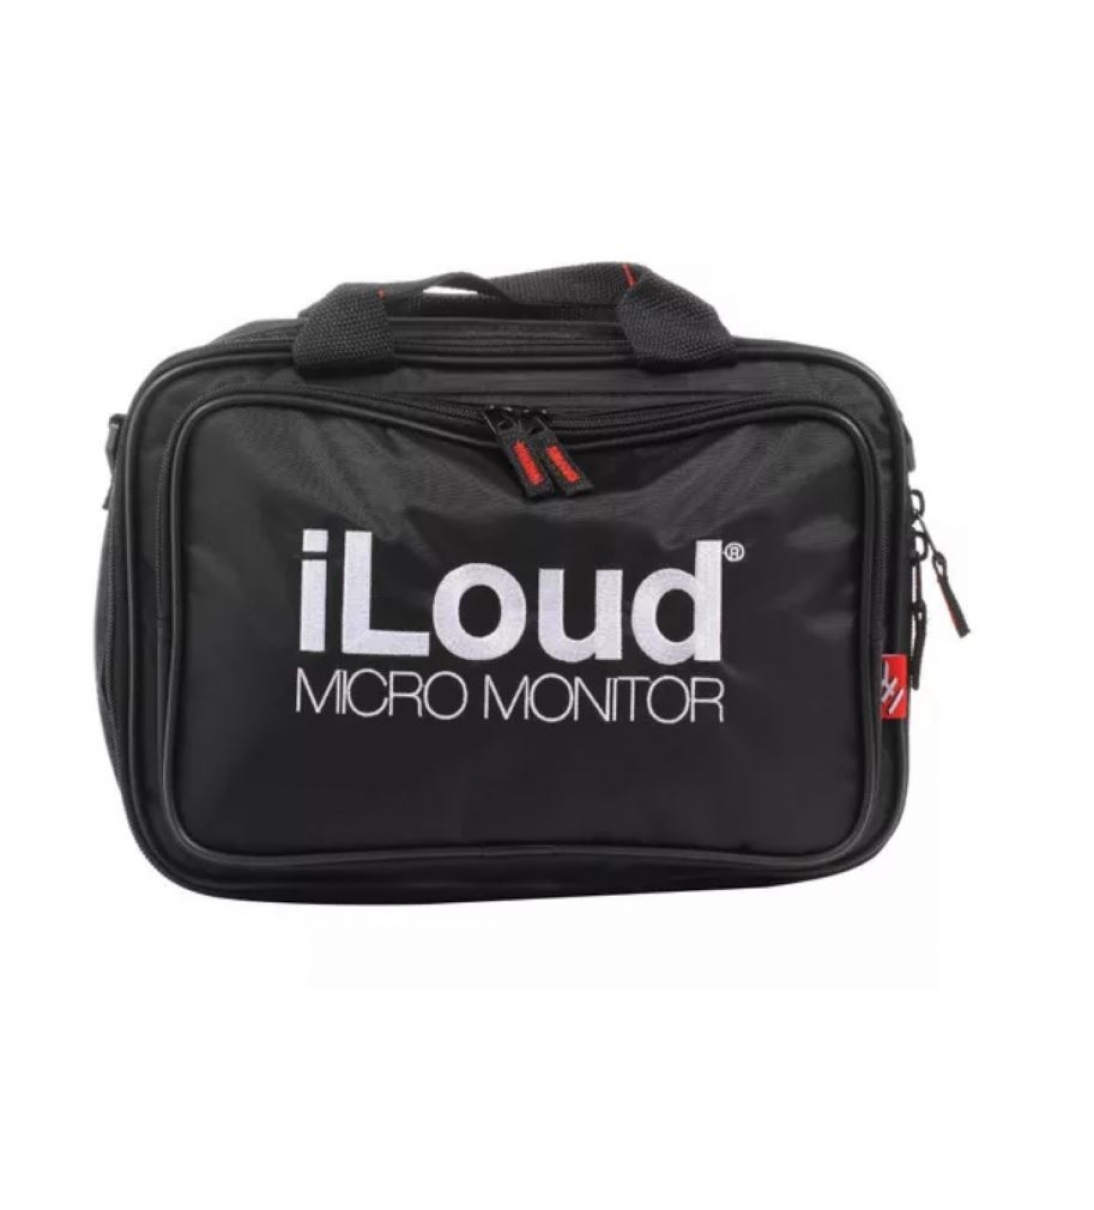 IK MULTIMEDIA iLoud Micro Monitor Travel Bag